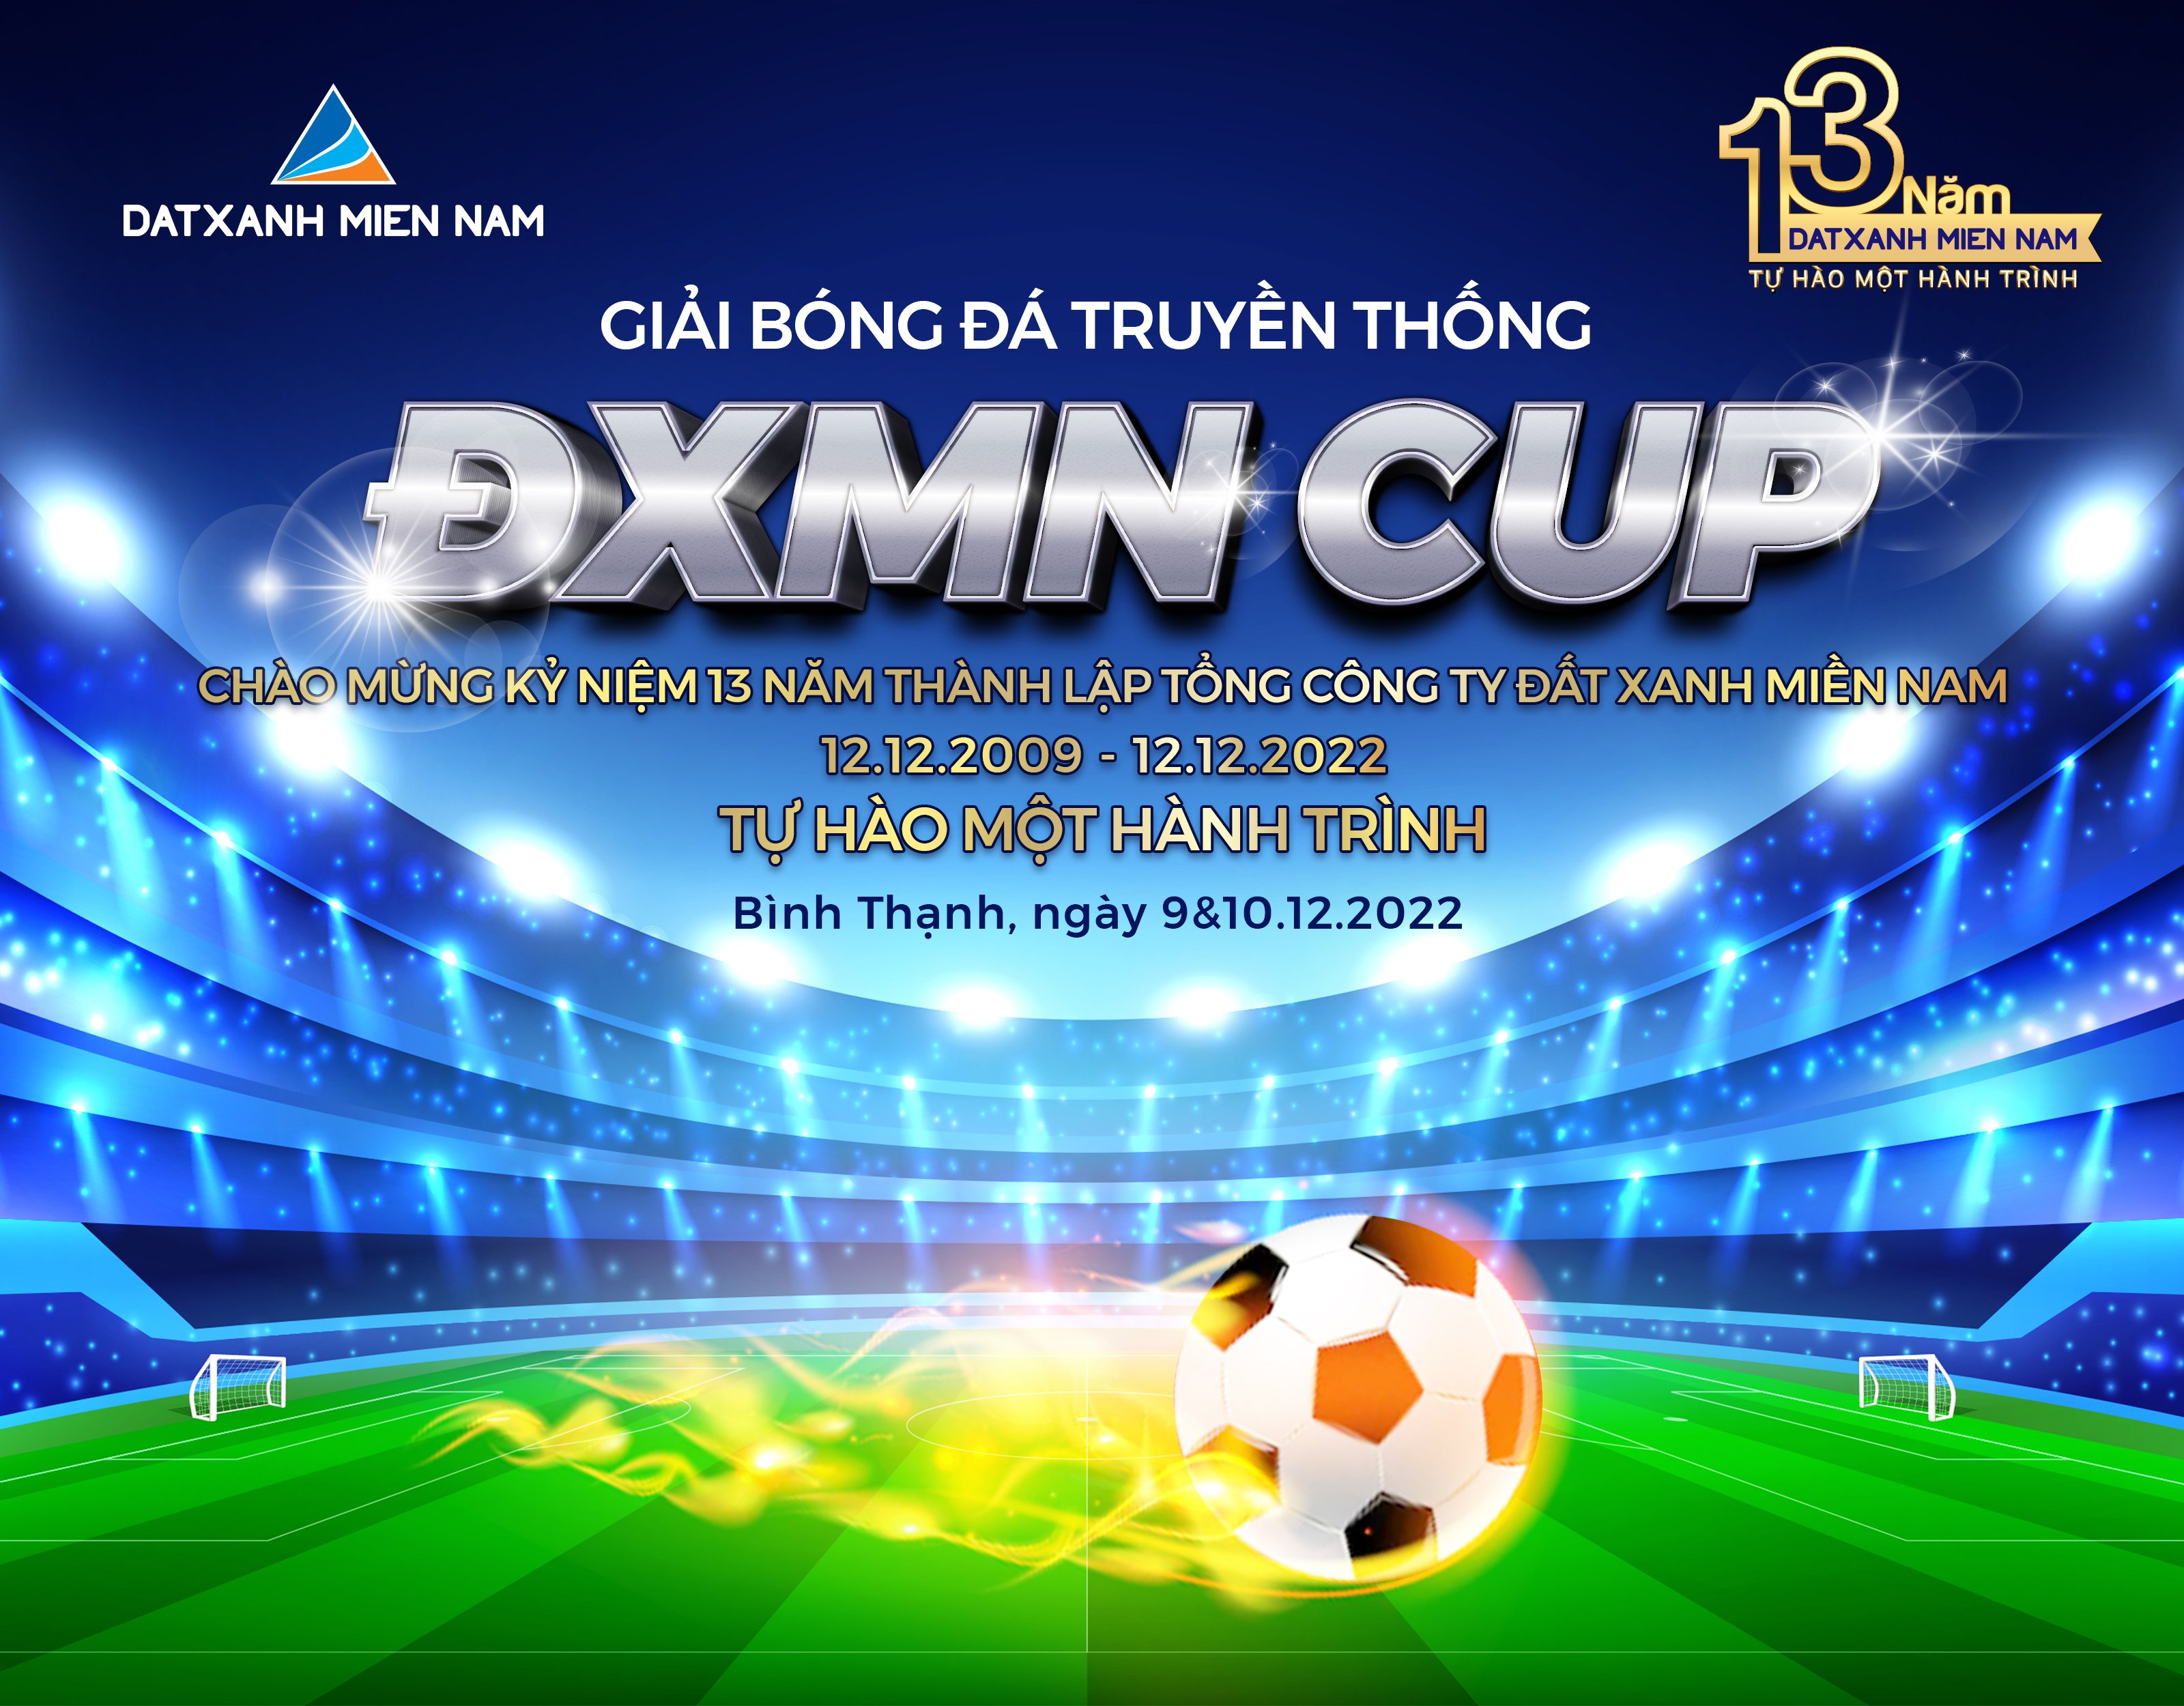 ĐXMN CUP 2022 - GIẢI BÓNG ĐÁ TRUYỀN THỐNG ĐXMN